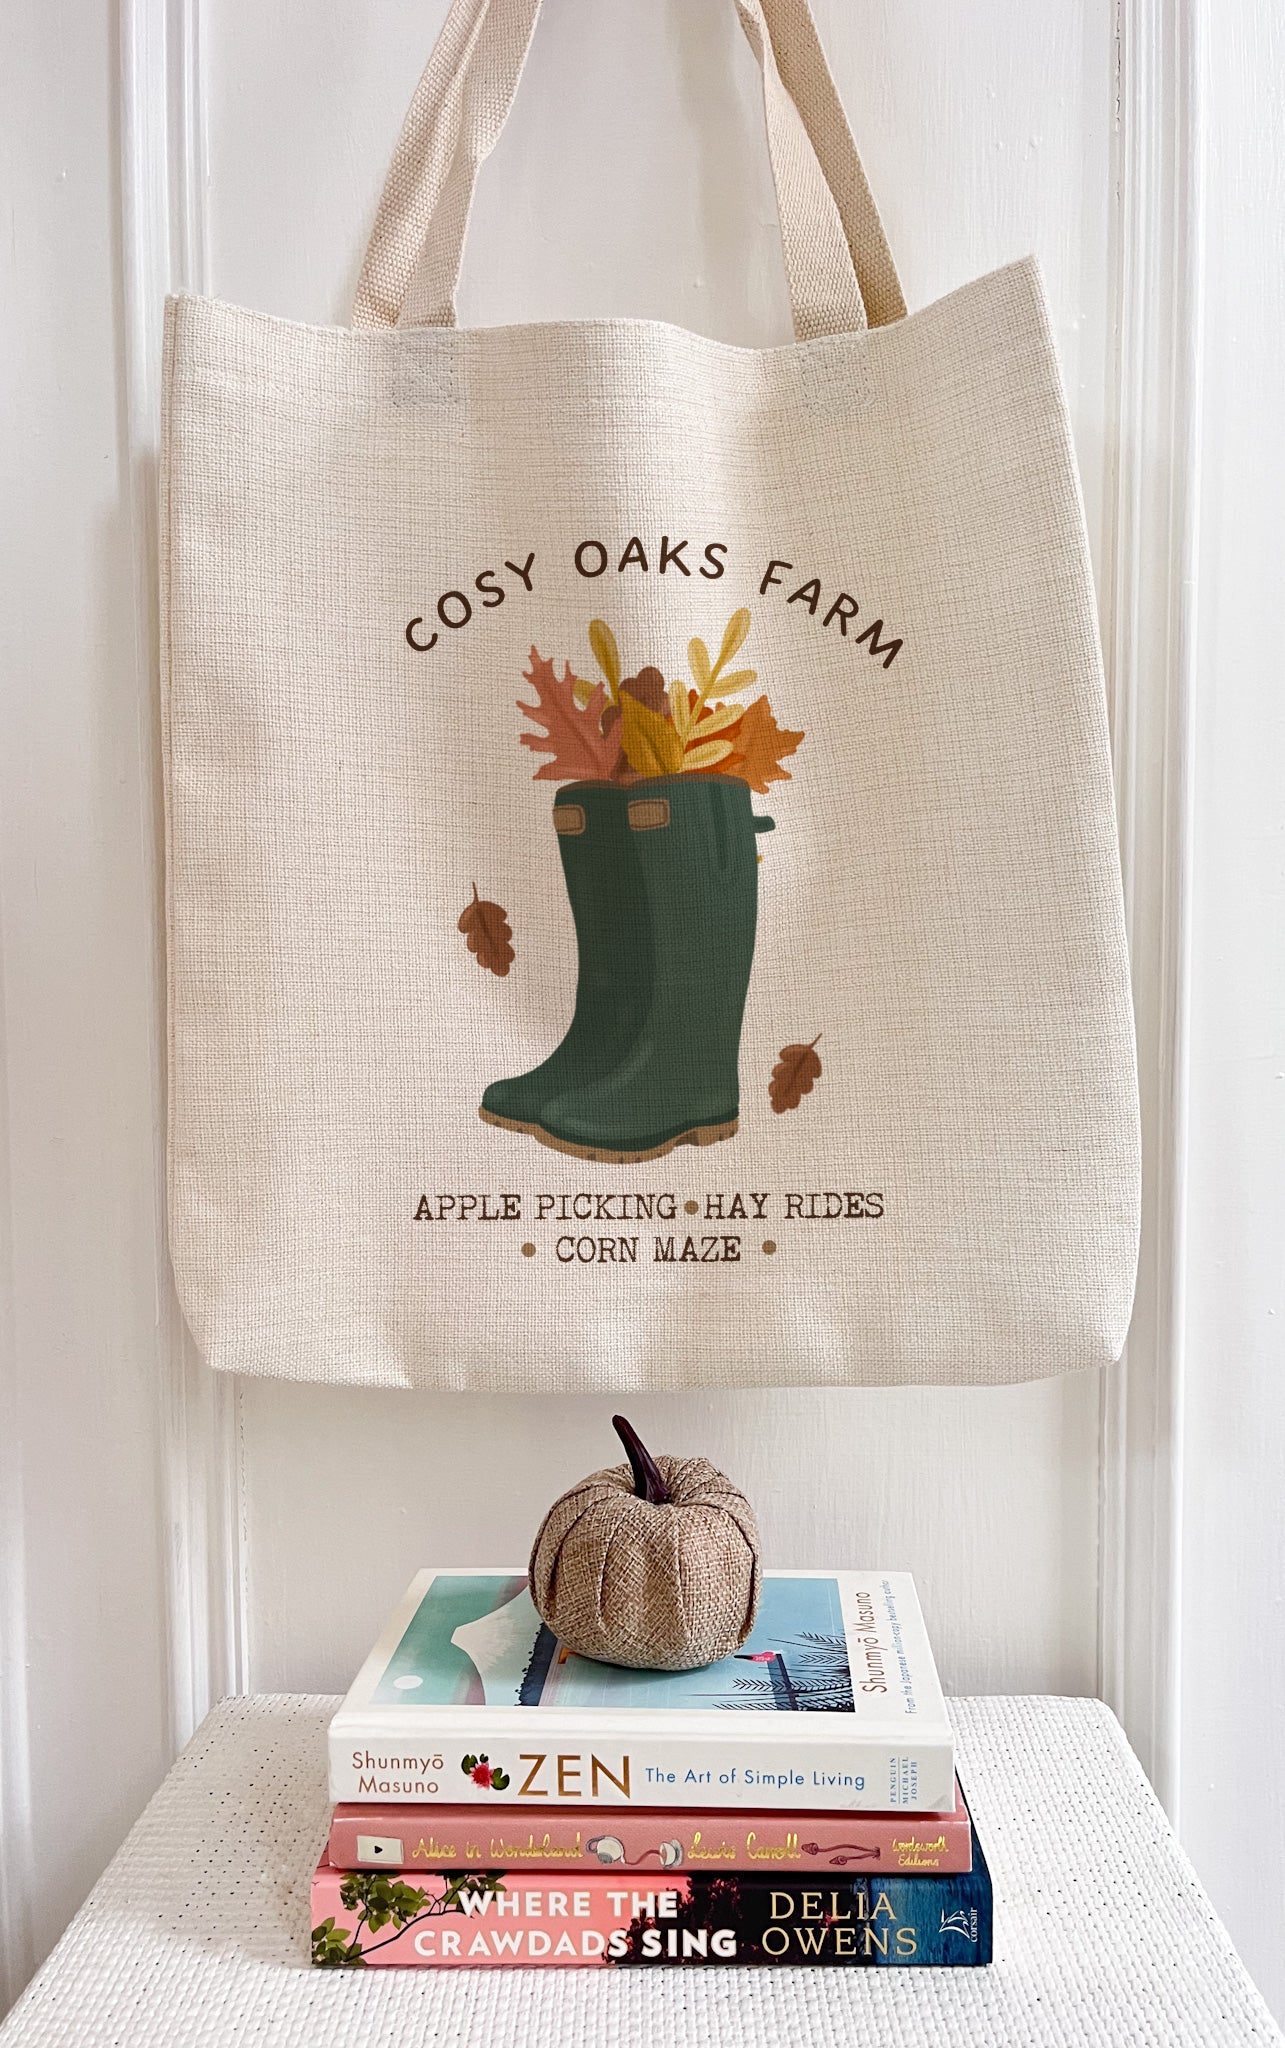 Cosy Oaks Farm/Autumn Large Tote Bag